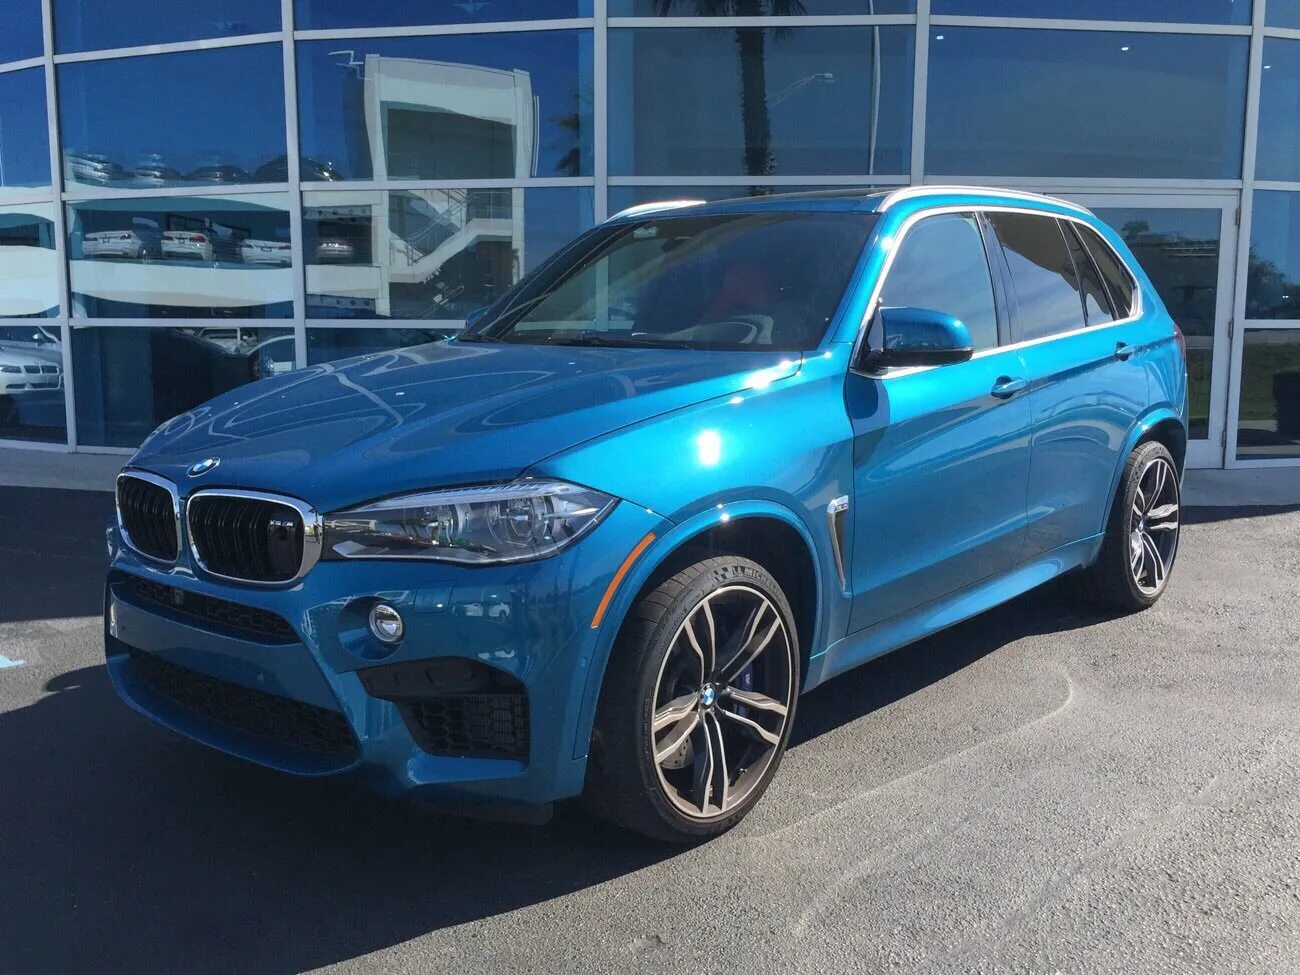 Bmw x5 цвета. BMW x5m 2015. BMW x5 синий. BMW x5 m Blue. БМВ x5m синий.